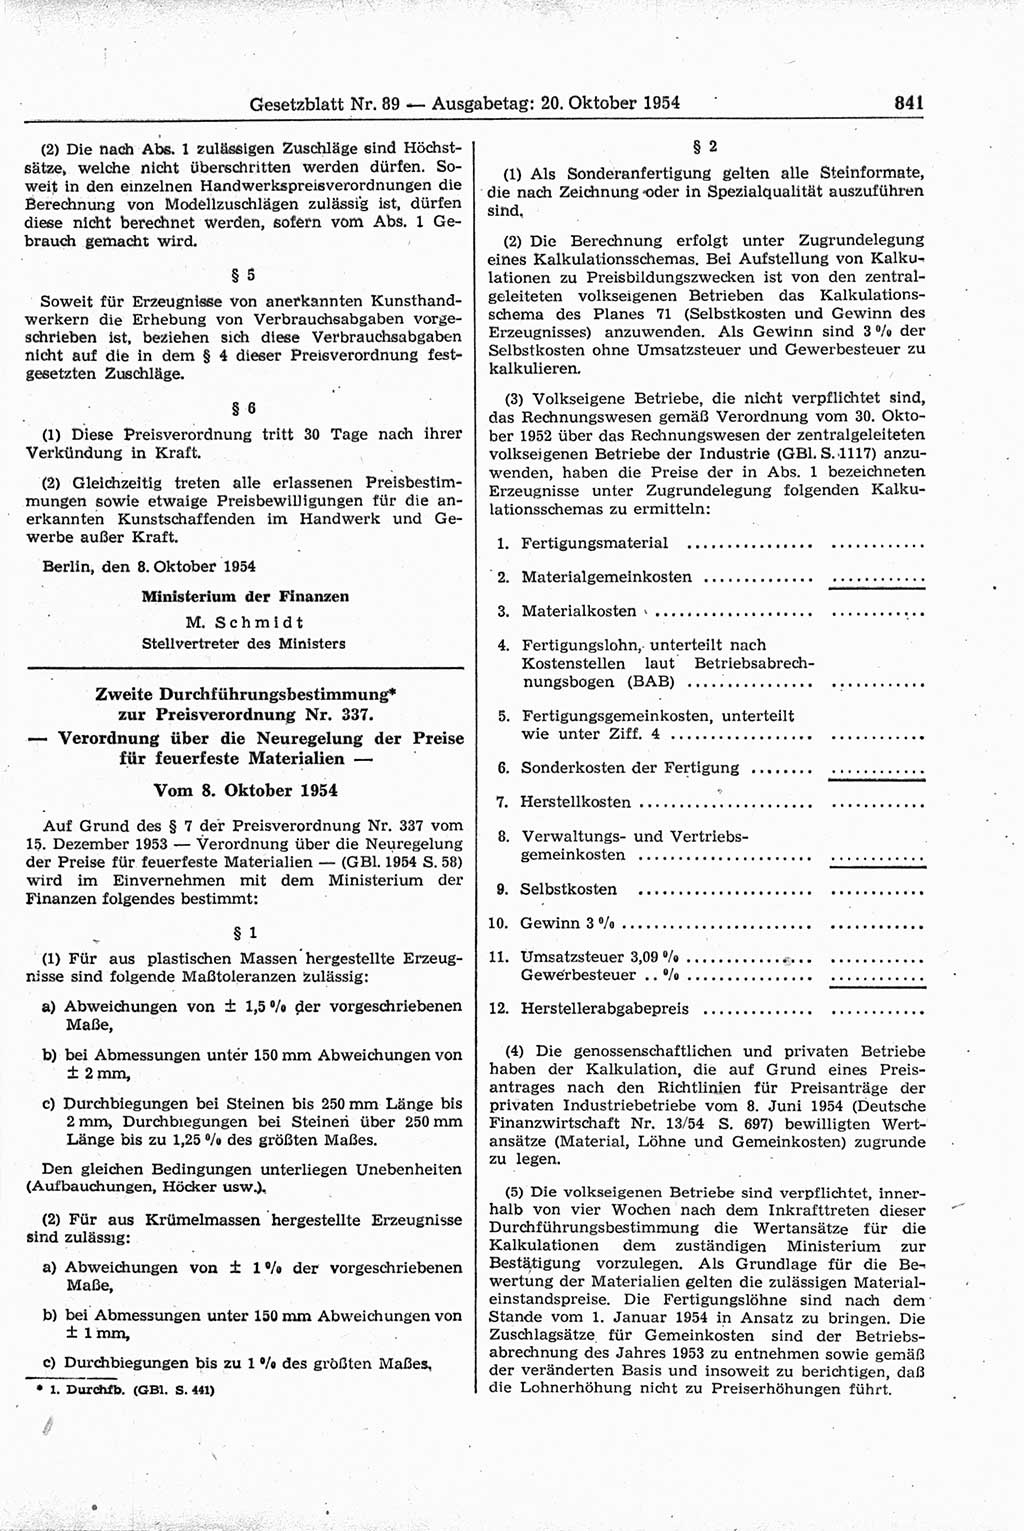 Gesetzblatt (GBl.) der Deutschen Demokratischen Republik (DDR) 1954, Seite 841 (GBl. DDR 1954, S. 841)